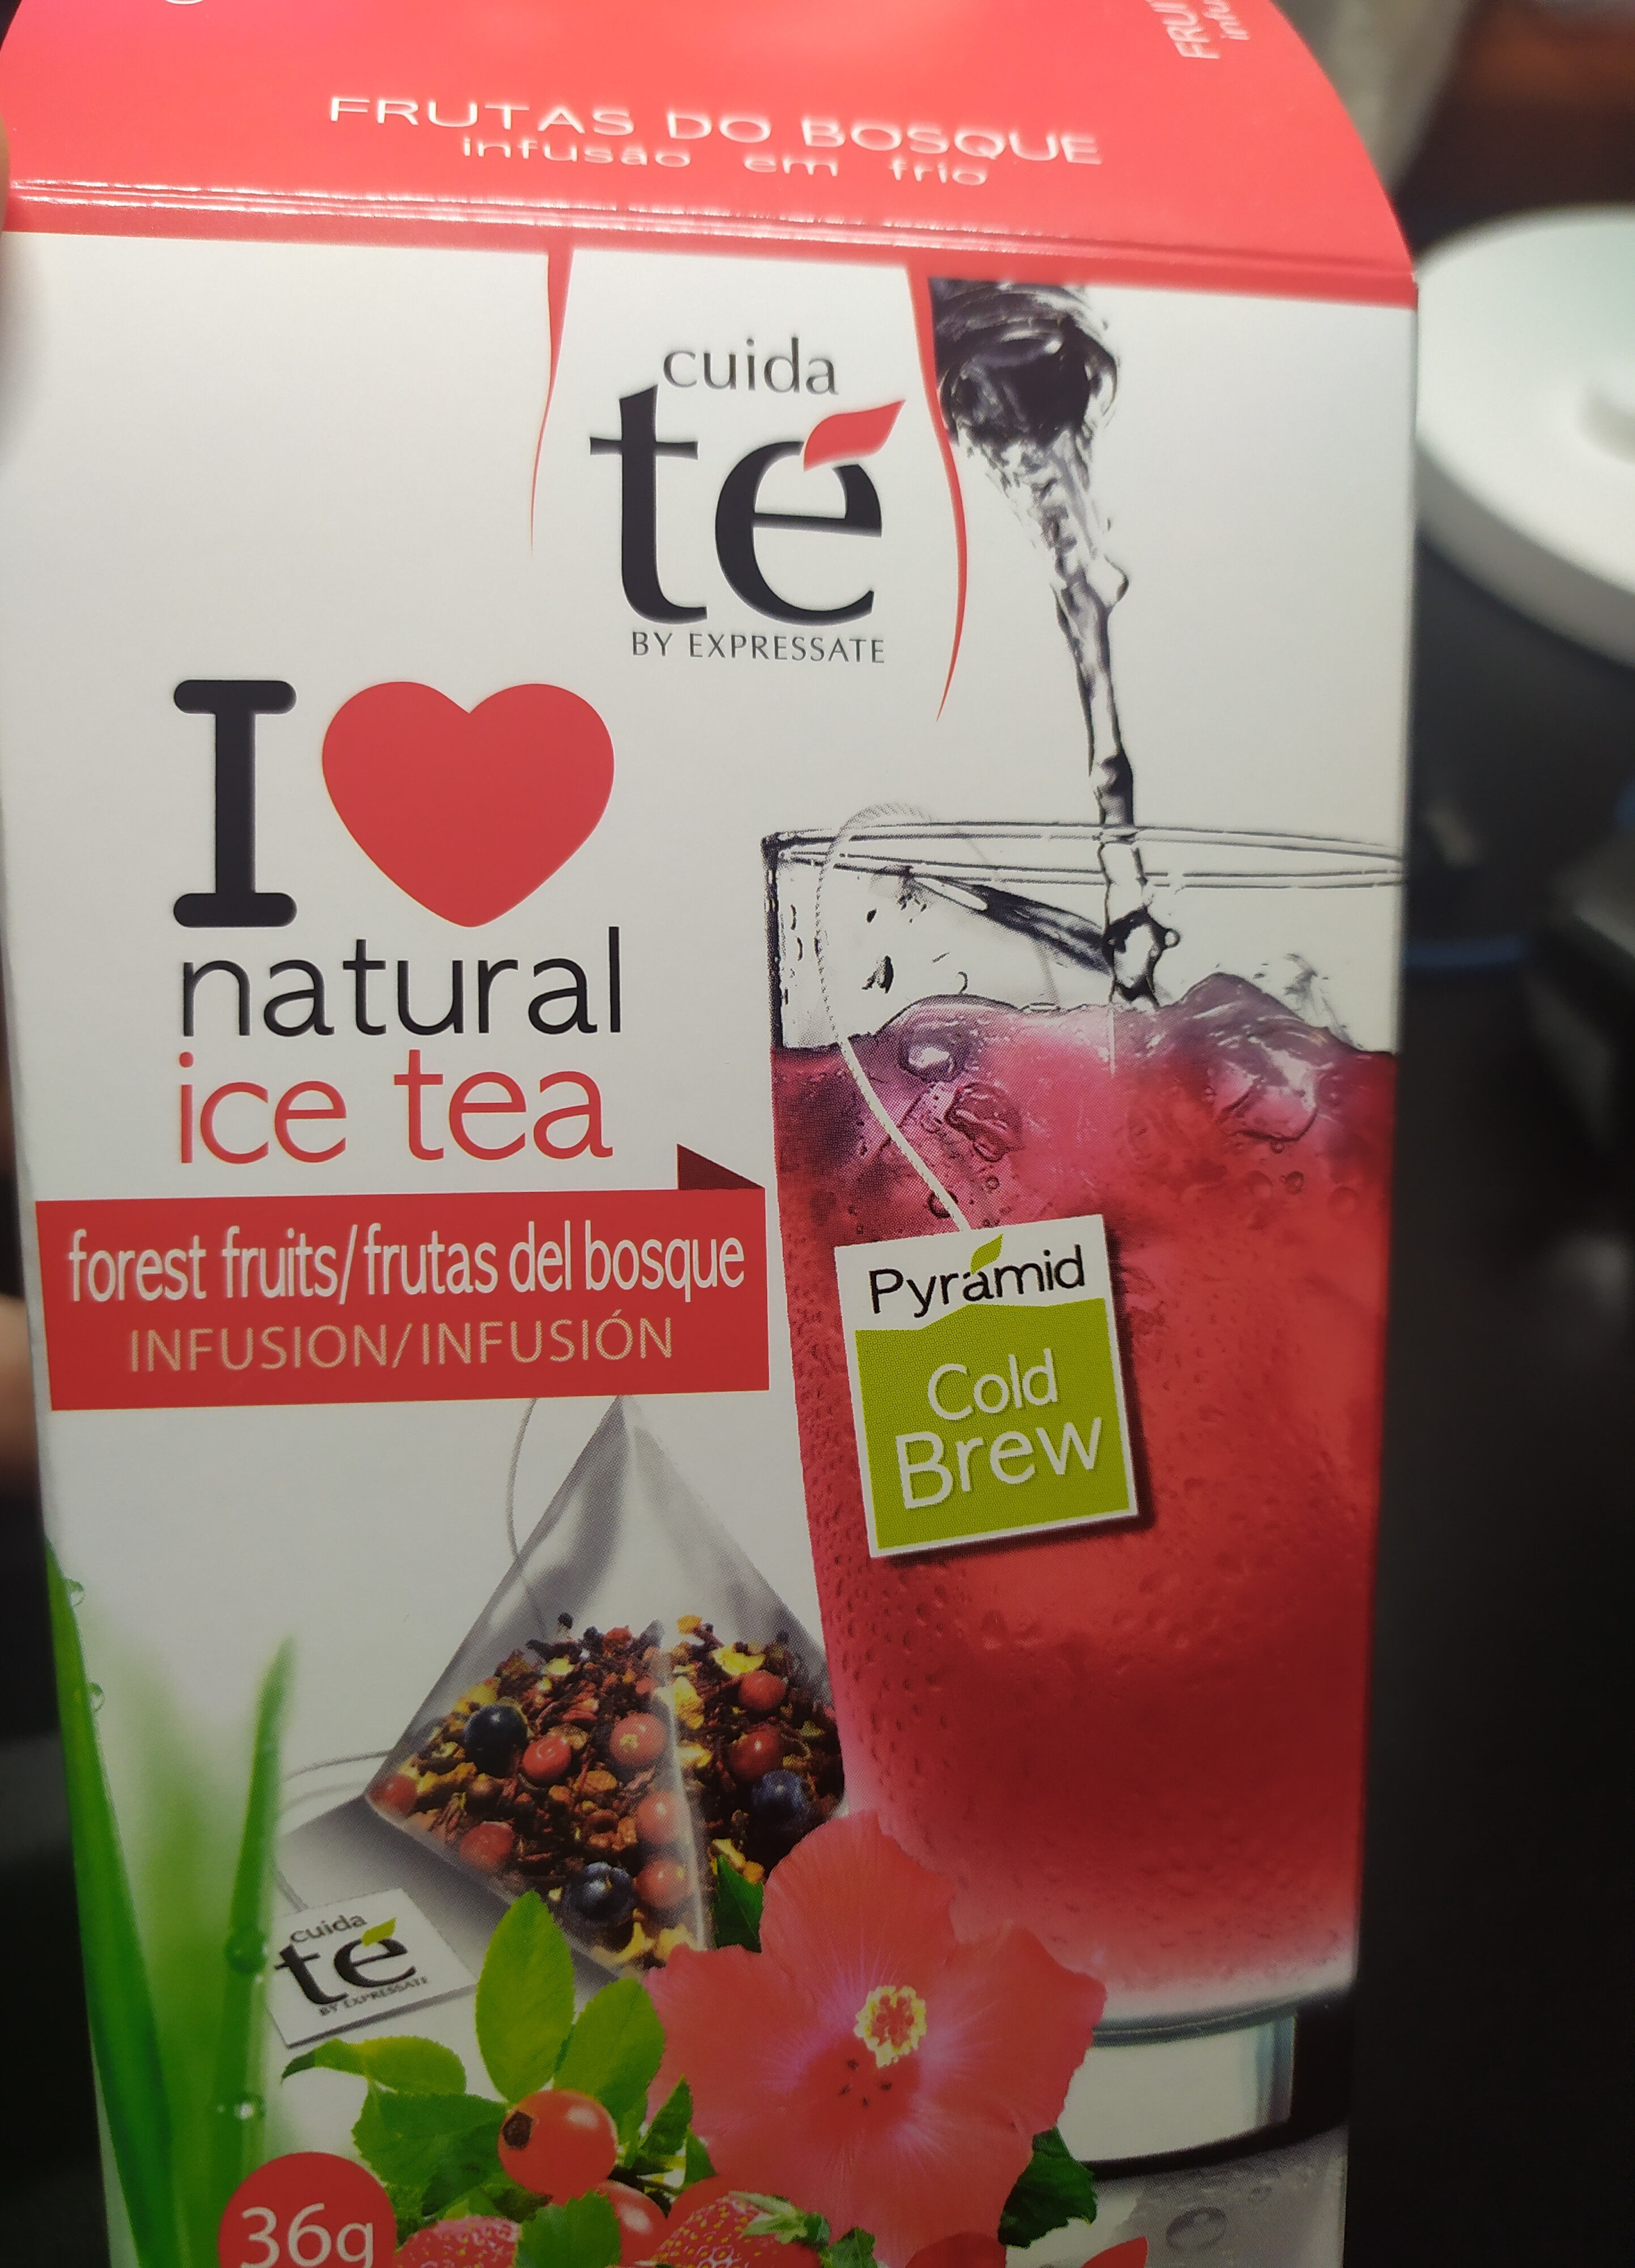 Ice tea frutas del bosque - Product - es